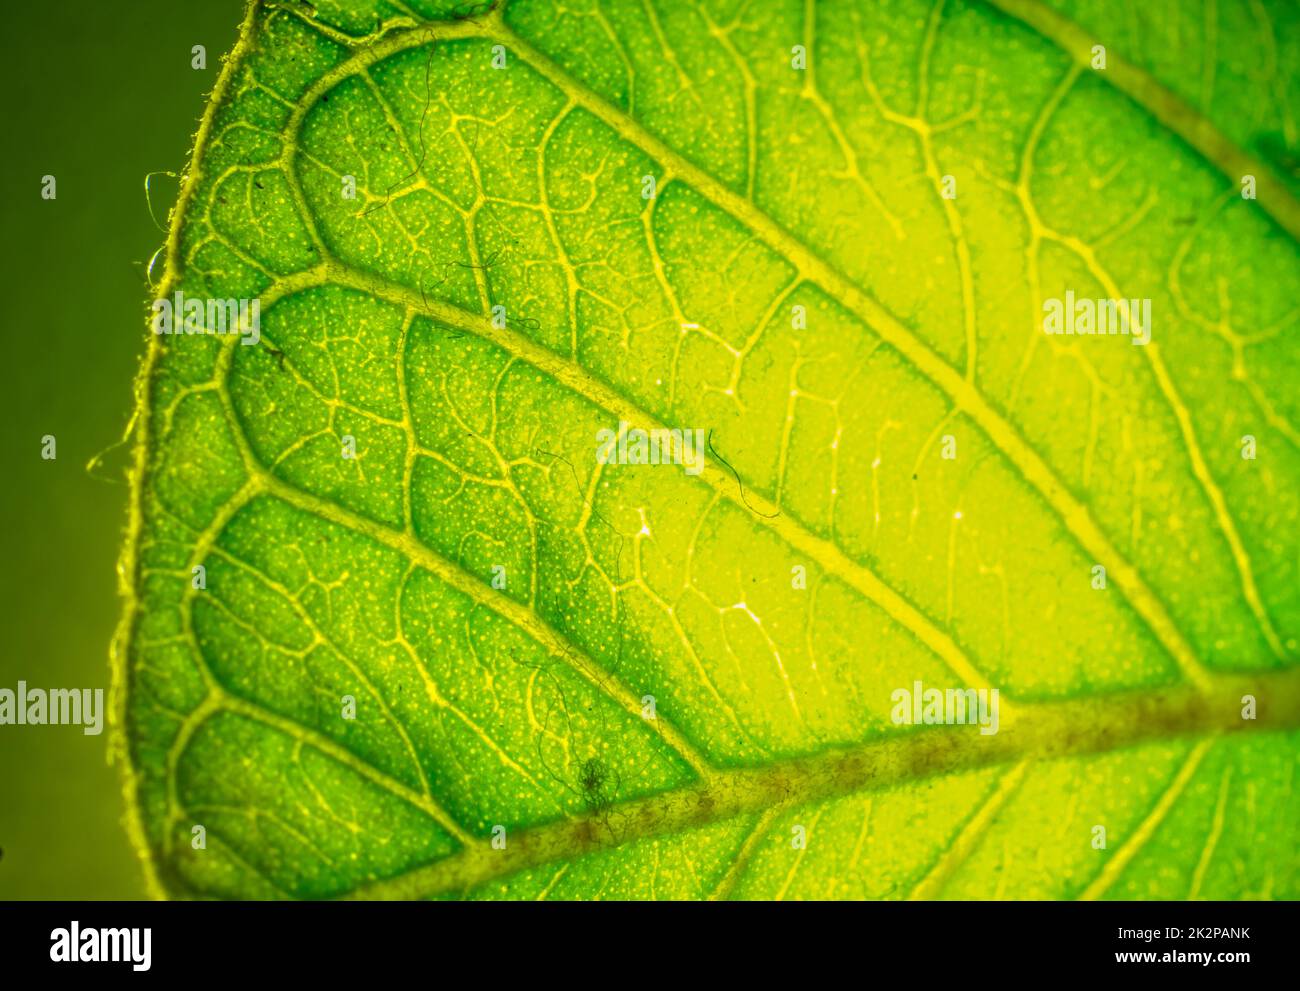 texture de la surface de la feuille de goyave de la macro photographie, vue de gros plan de la plante. Banque D'Images